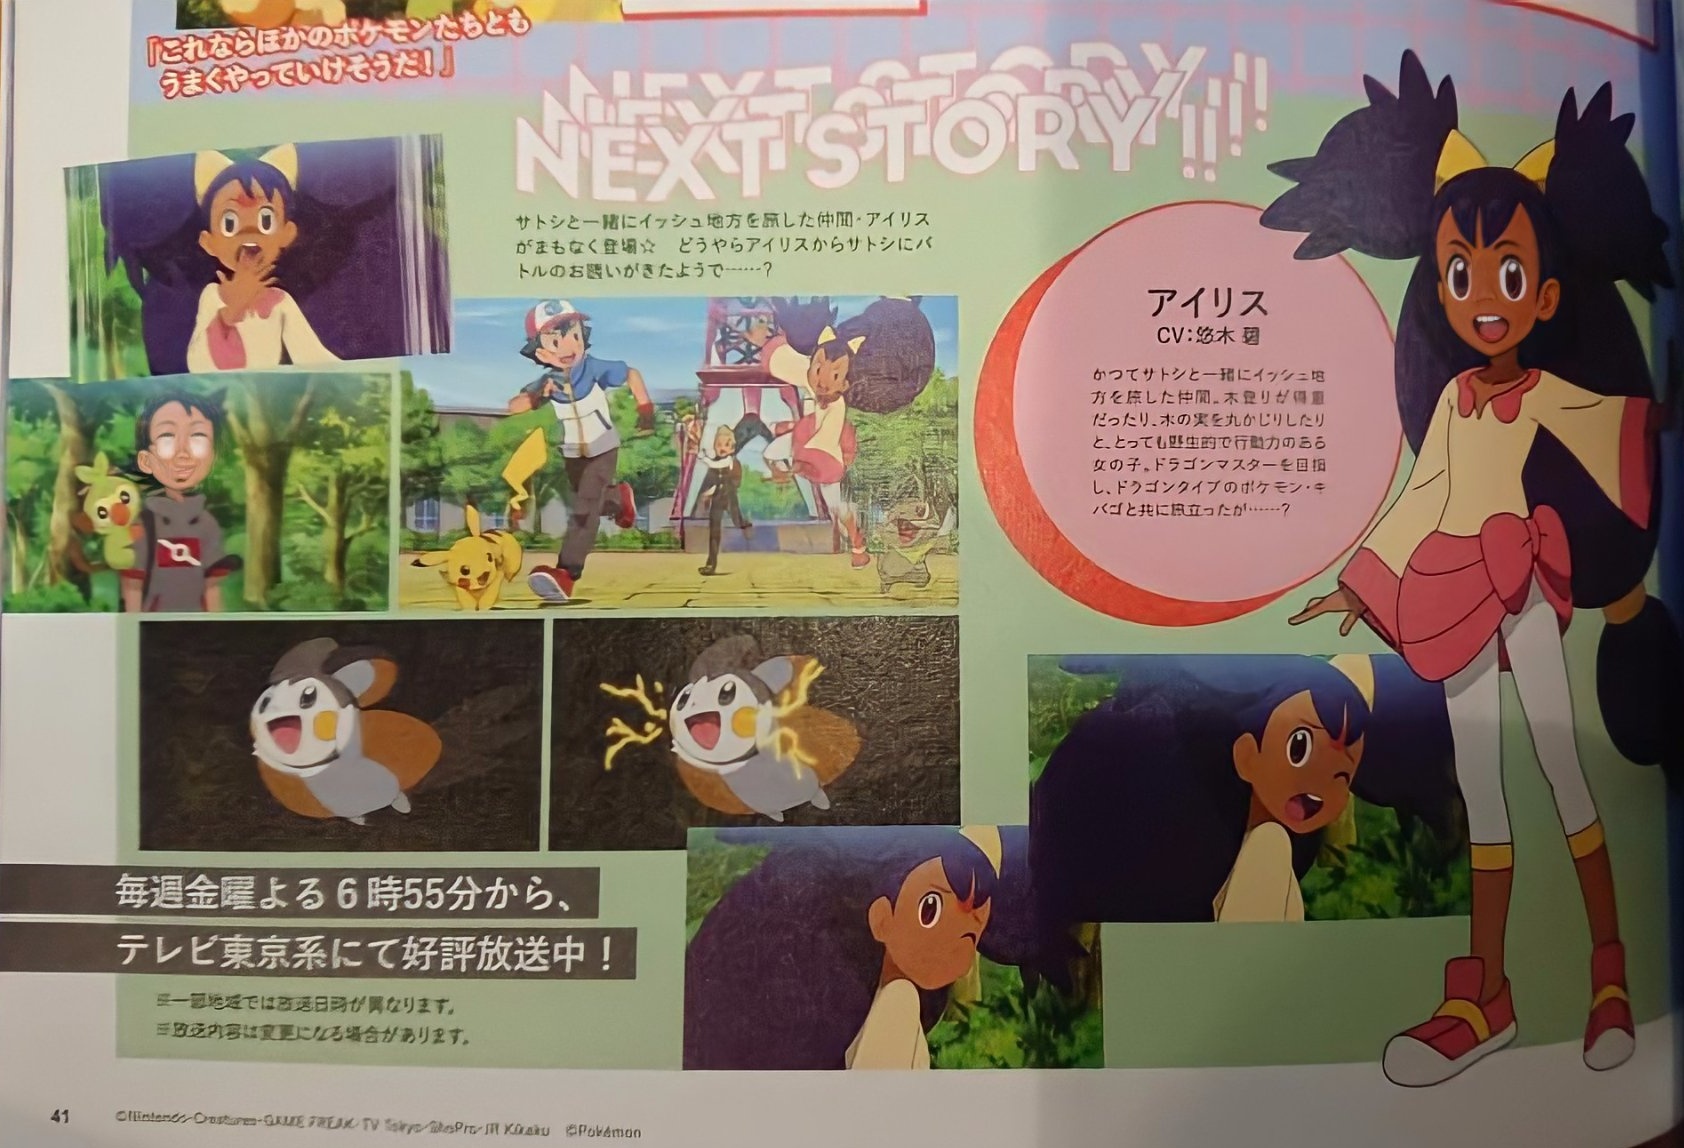 Jornadas Pokémon  Nova abertura indica o retorno de Gary e Iris -  NerdBunker